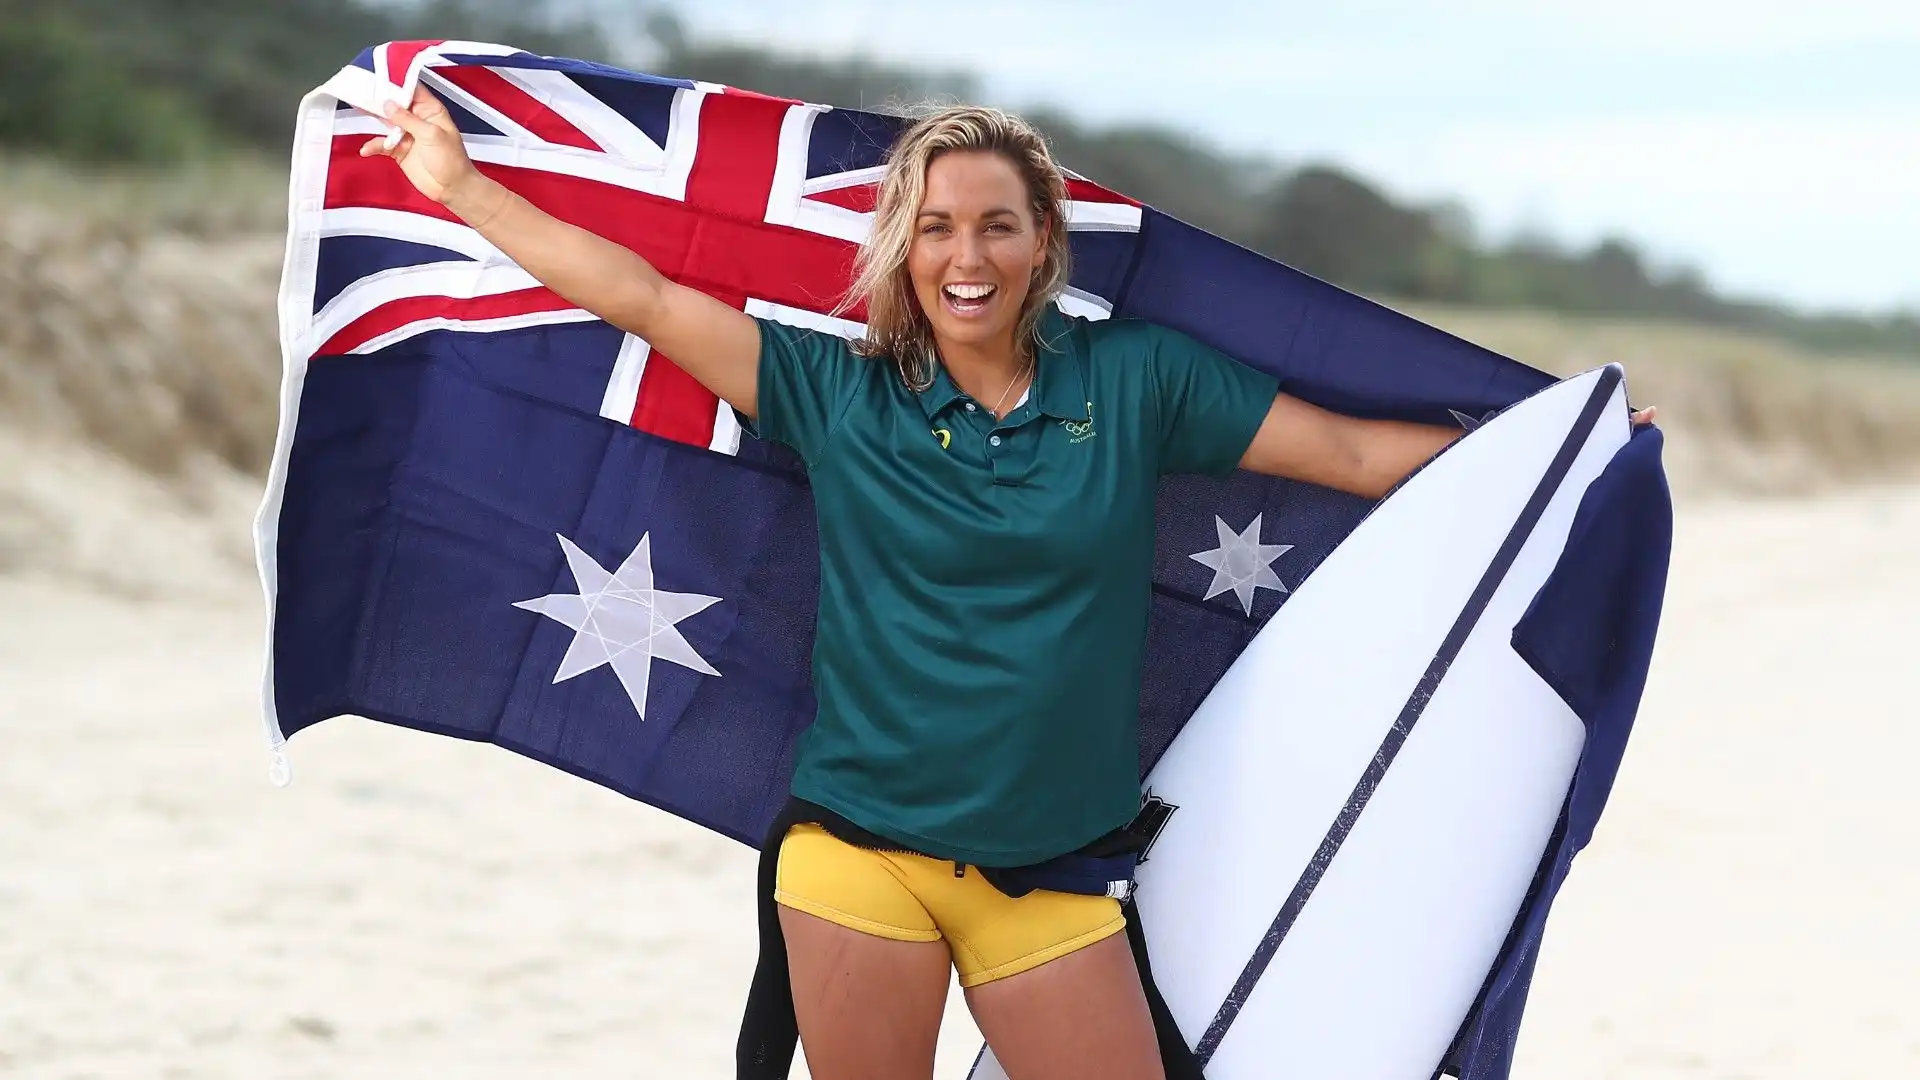 Eccola mentre sfoggia la bandiera australiana